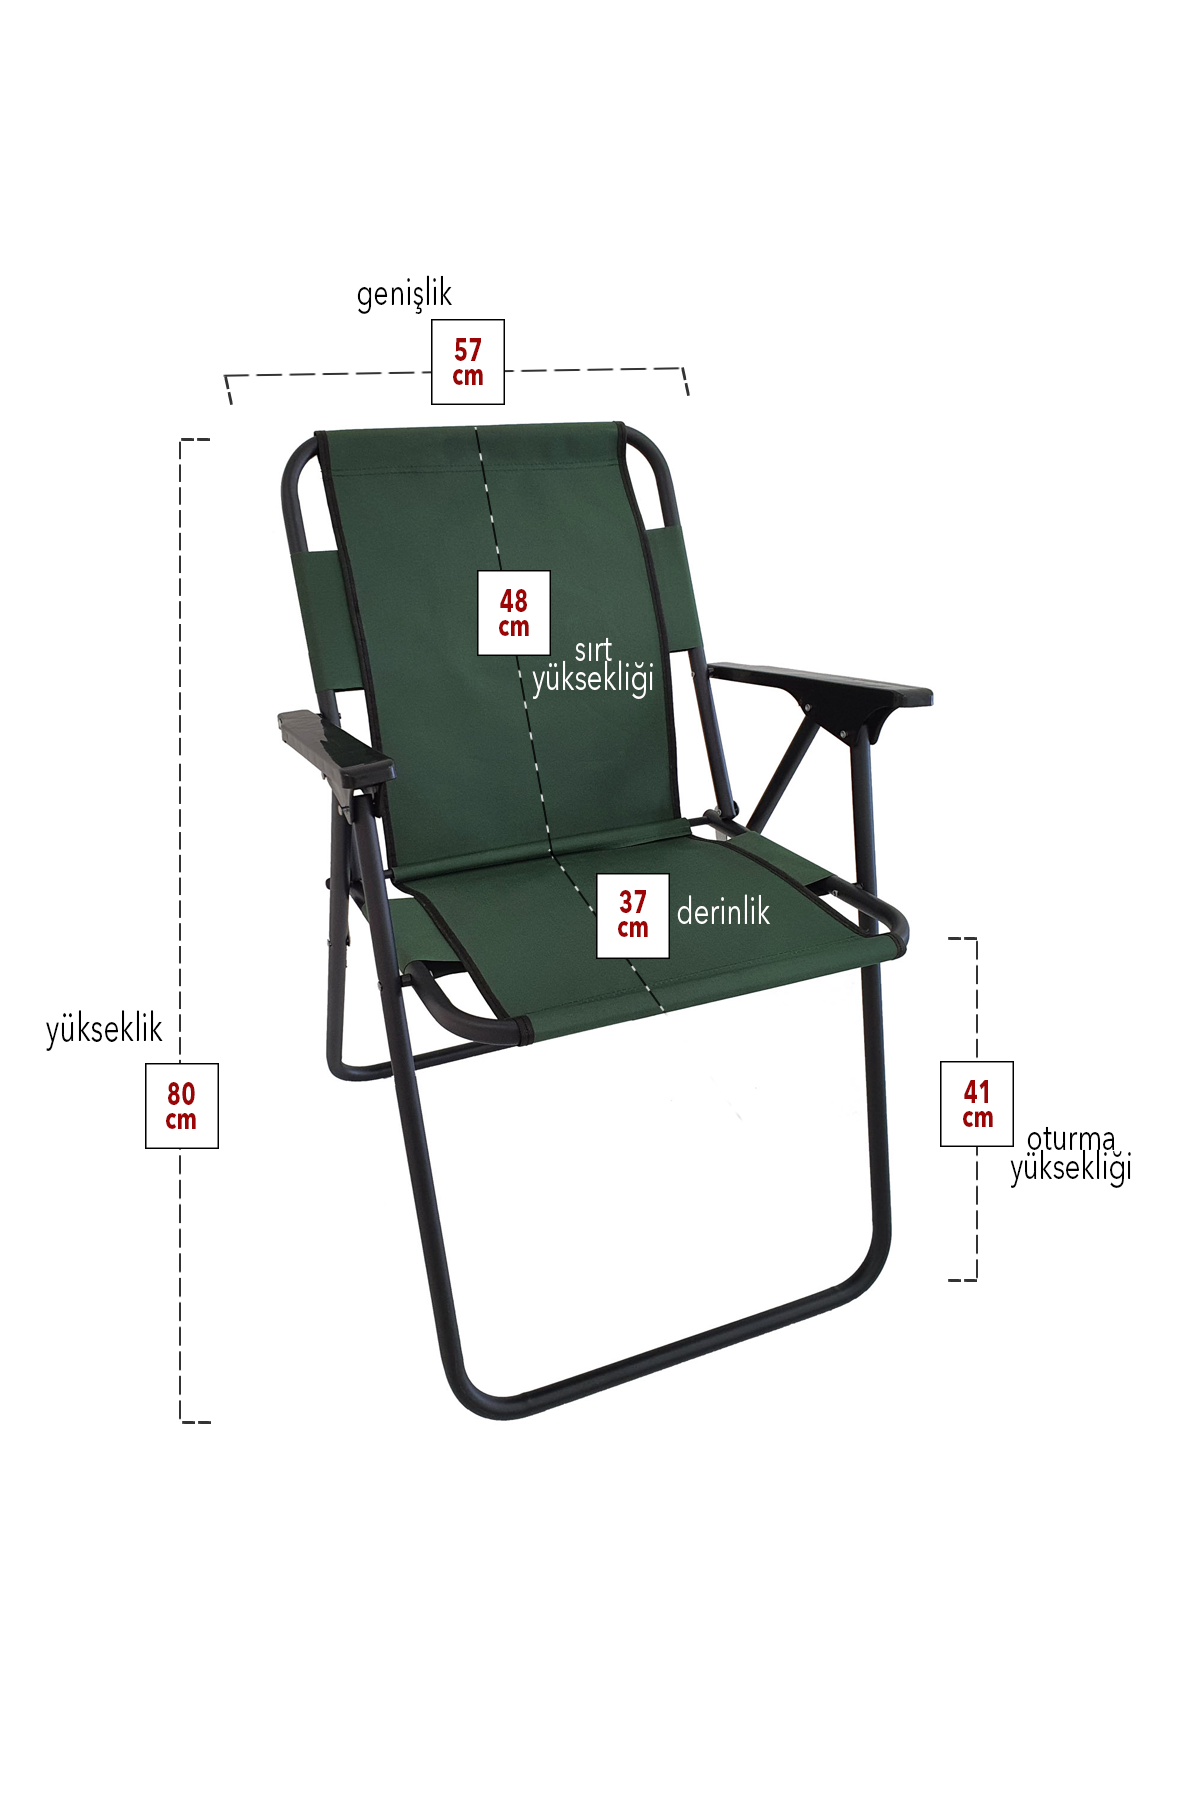 Bofigo 3 Pcs Camping Chair Folding Chair Picnic Chair Beach Chair Green